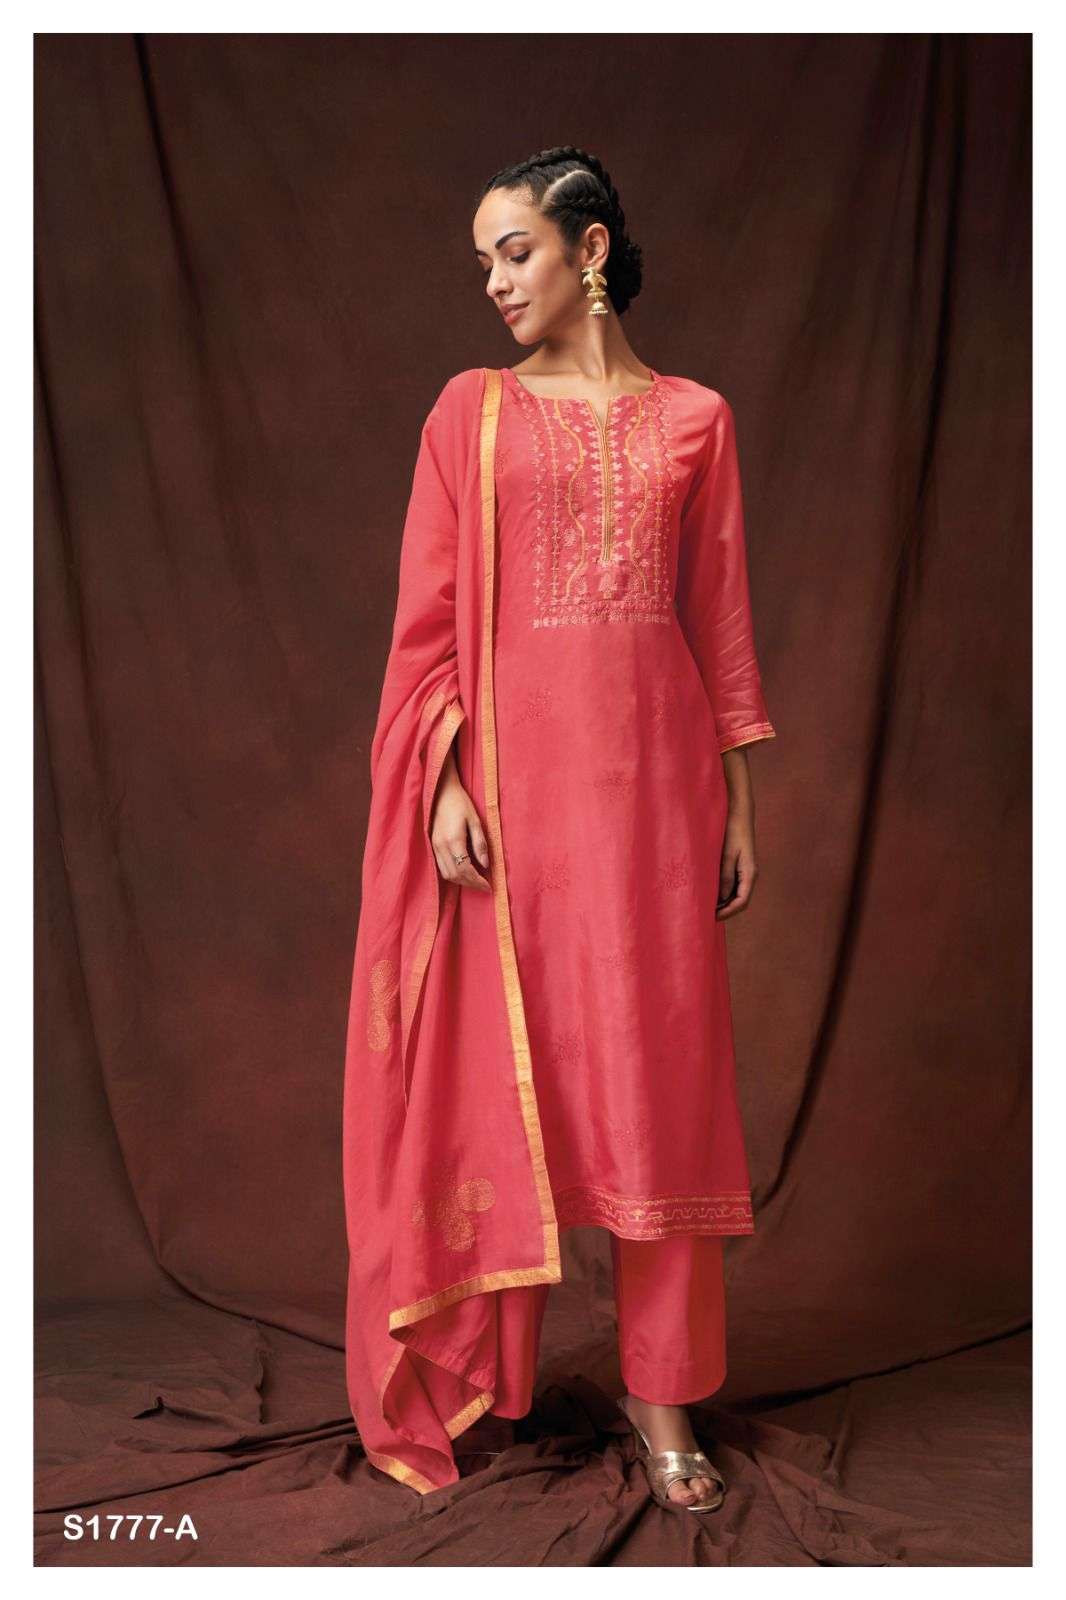 ganga jacinta 1777 colour series designer latest salwar kameez wholesaler surat gujarat